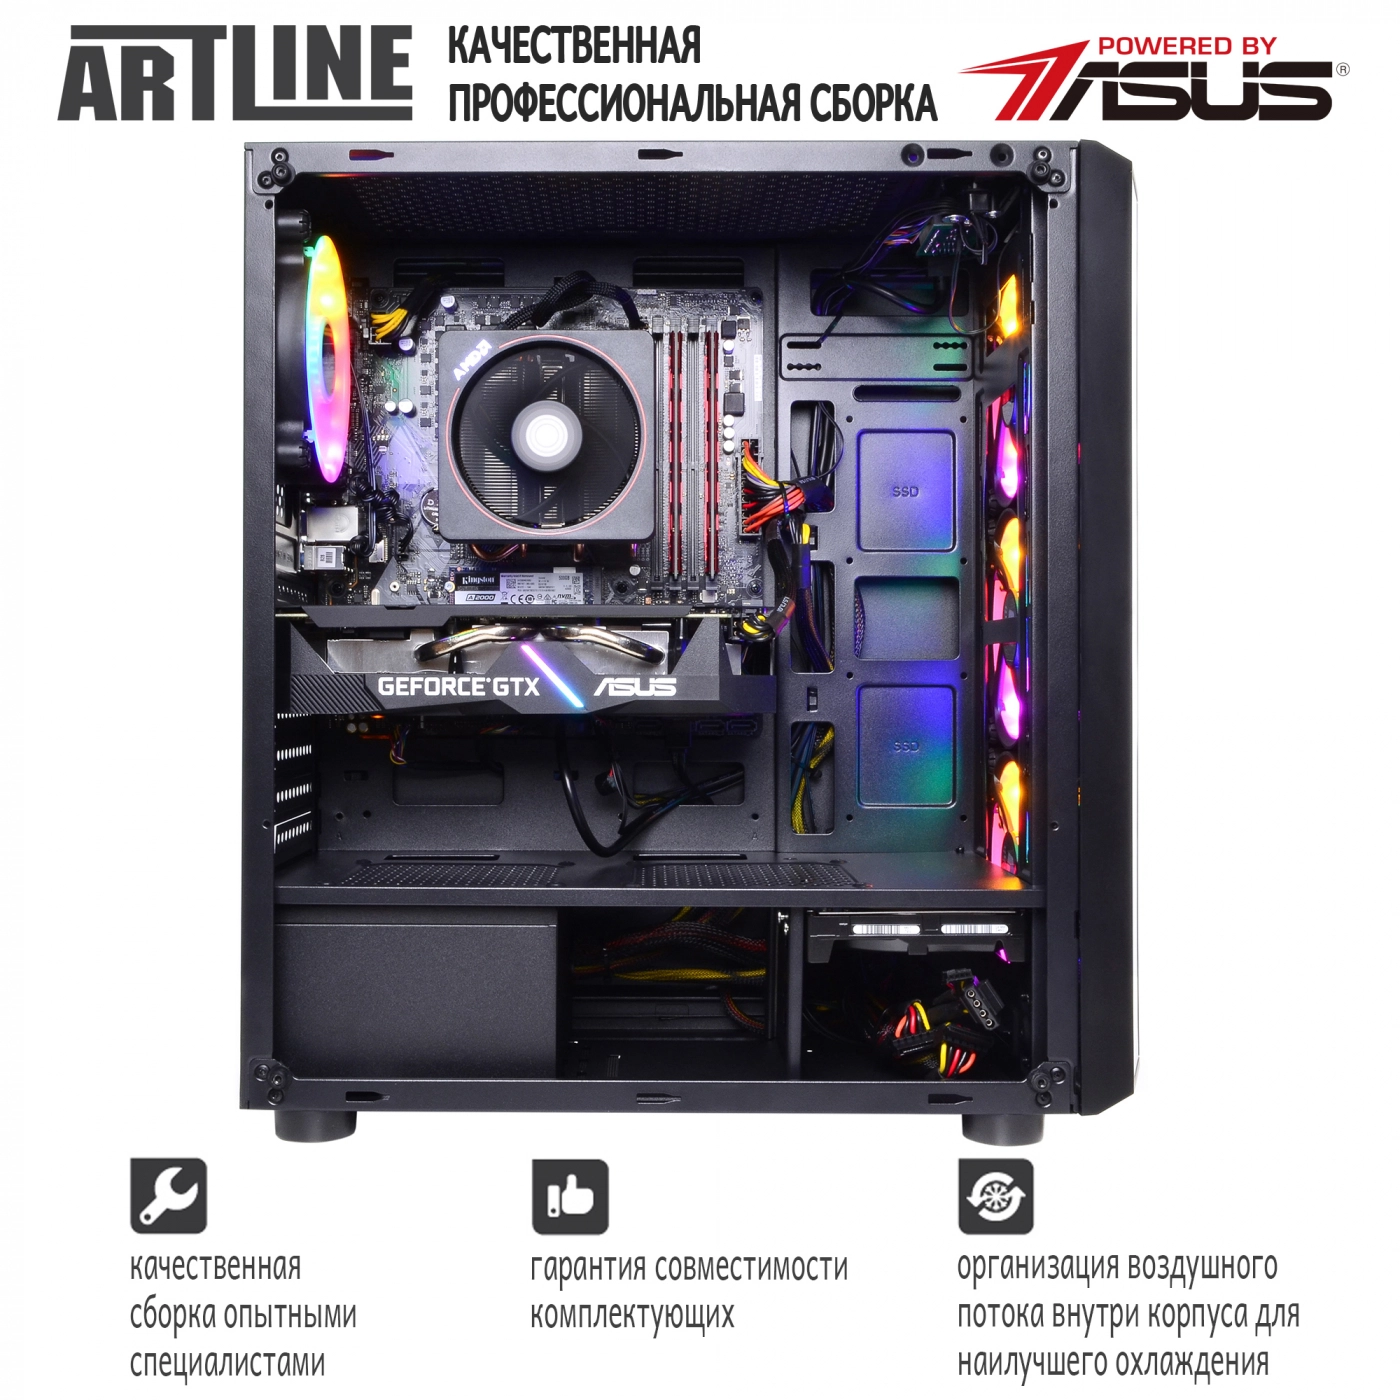 Купить Компьютер ARTLINE Gaming X68v02 - фото 9